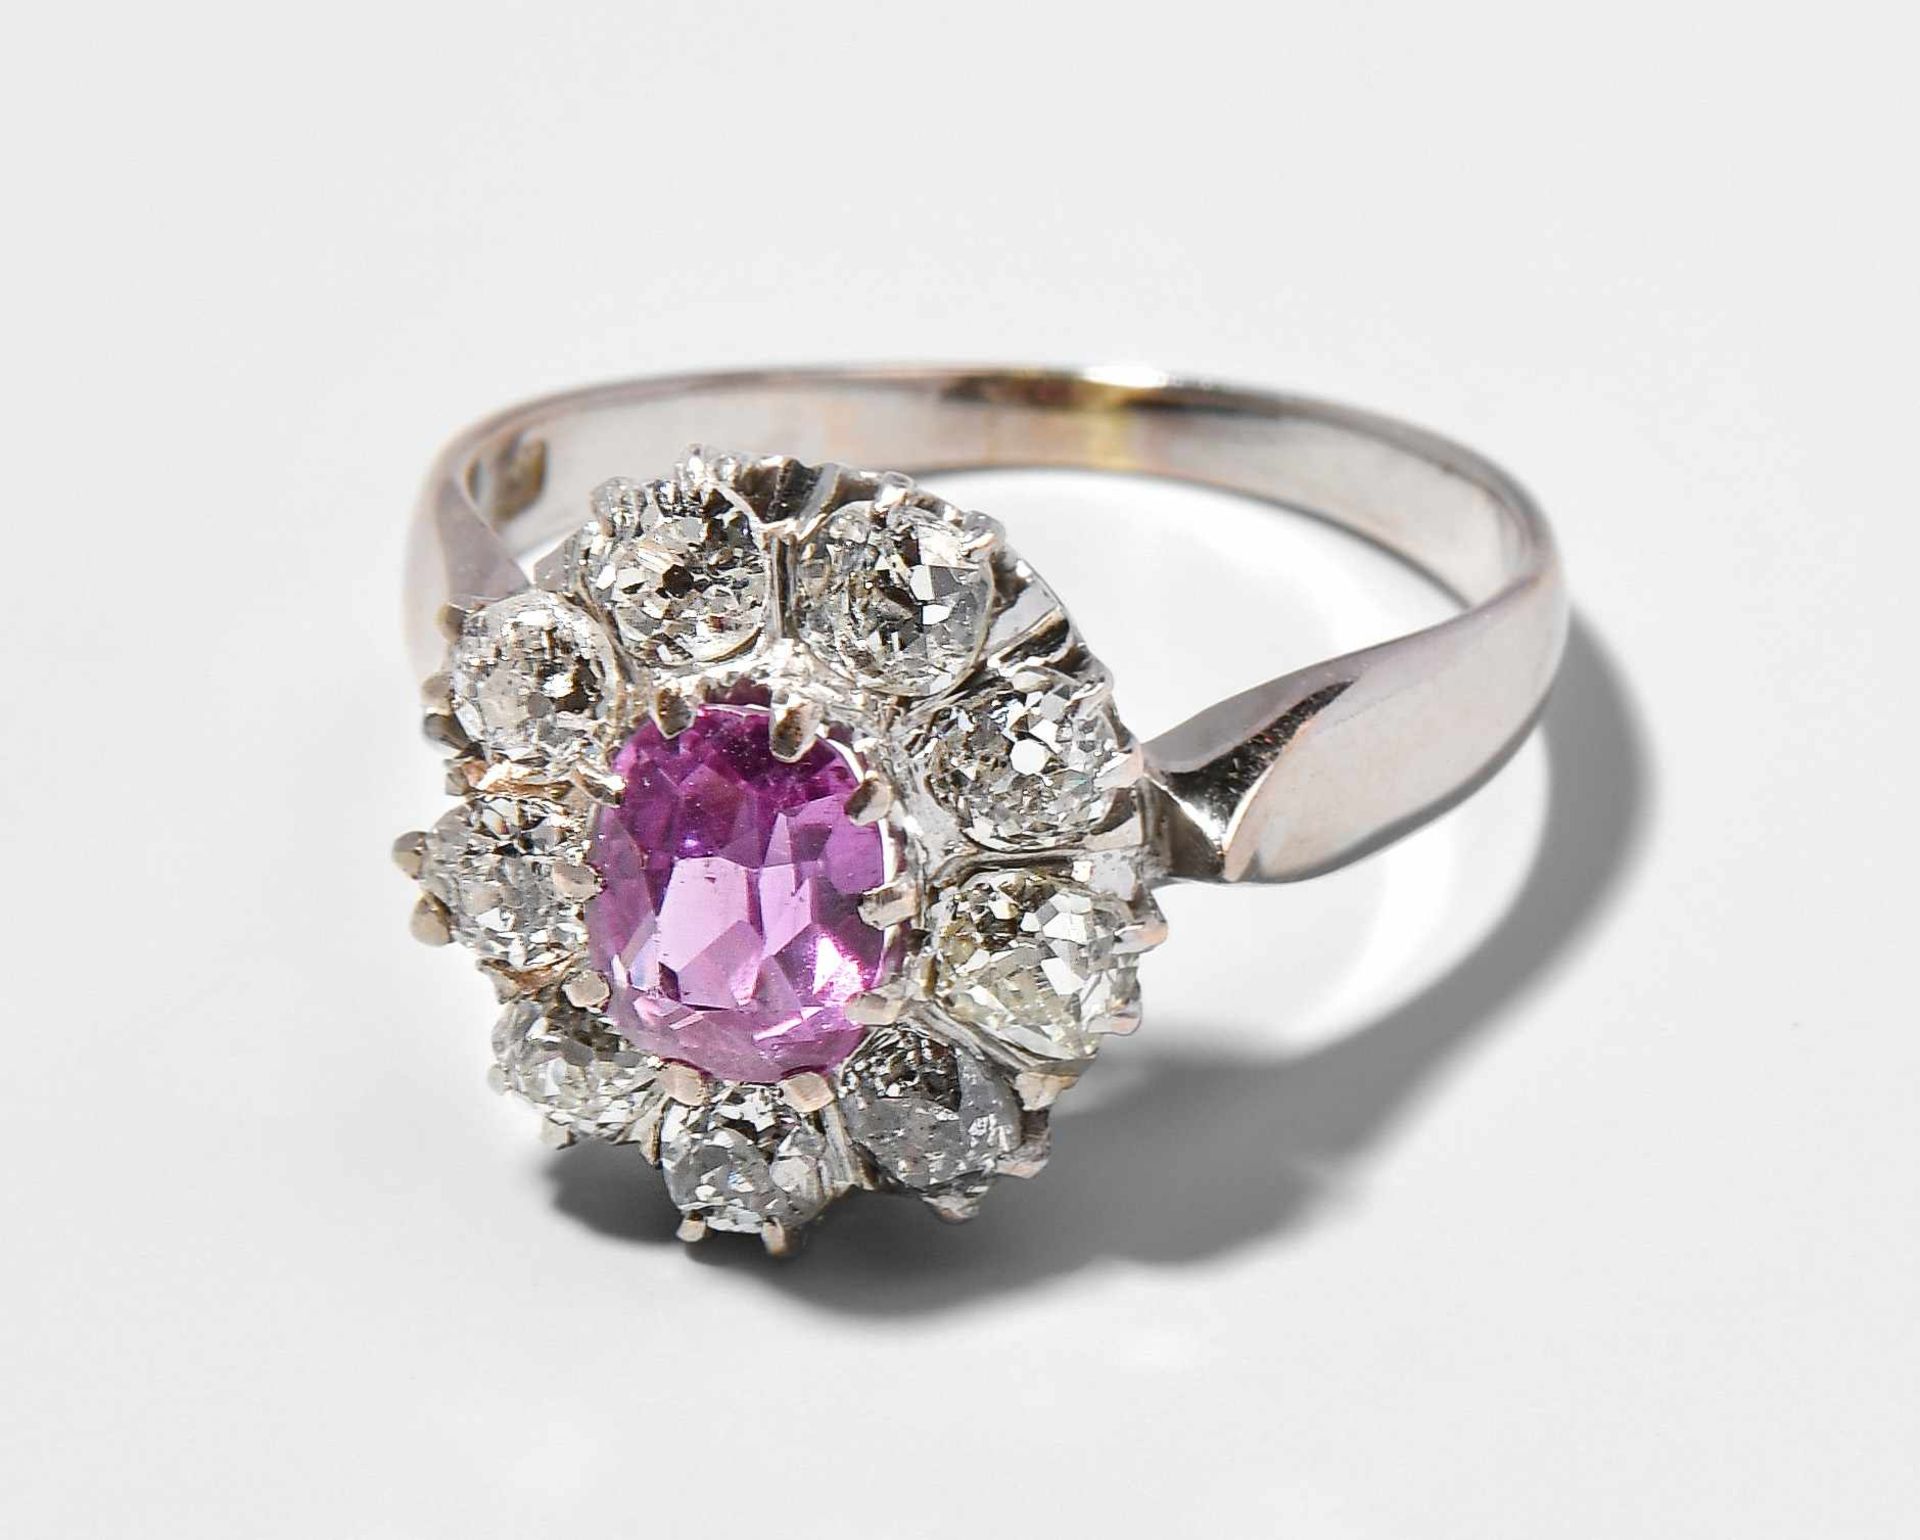 Saphir-Diamant-Ring 585 Weissgold. 1 Pink-Saphir ca. 1.20 ct und 9 Altschliff-Diamanten zus. ca. 1.